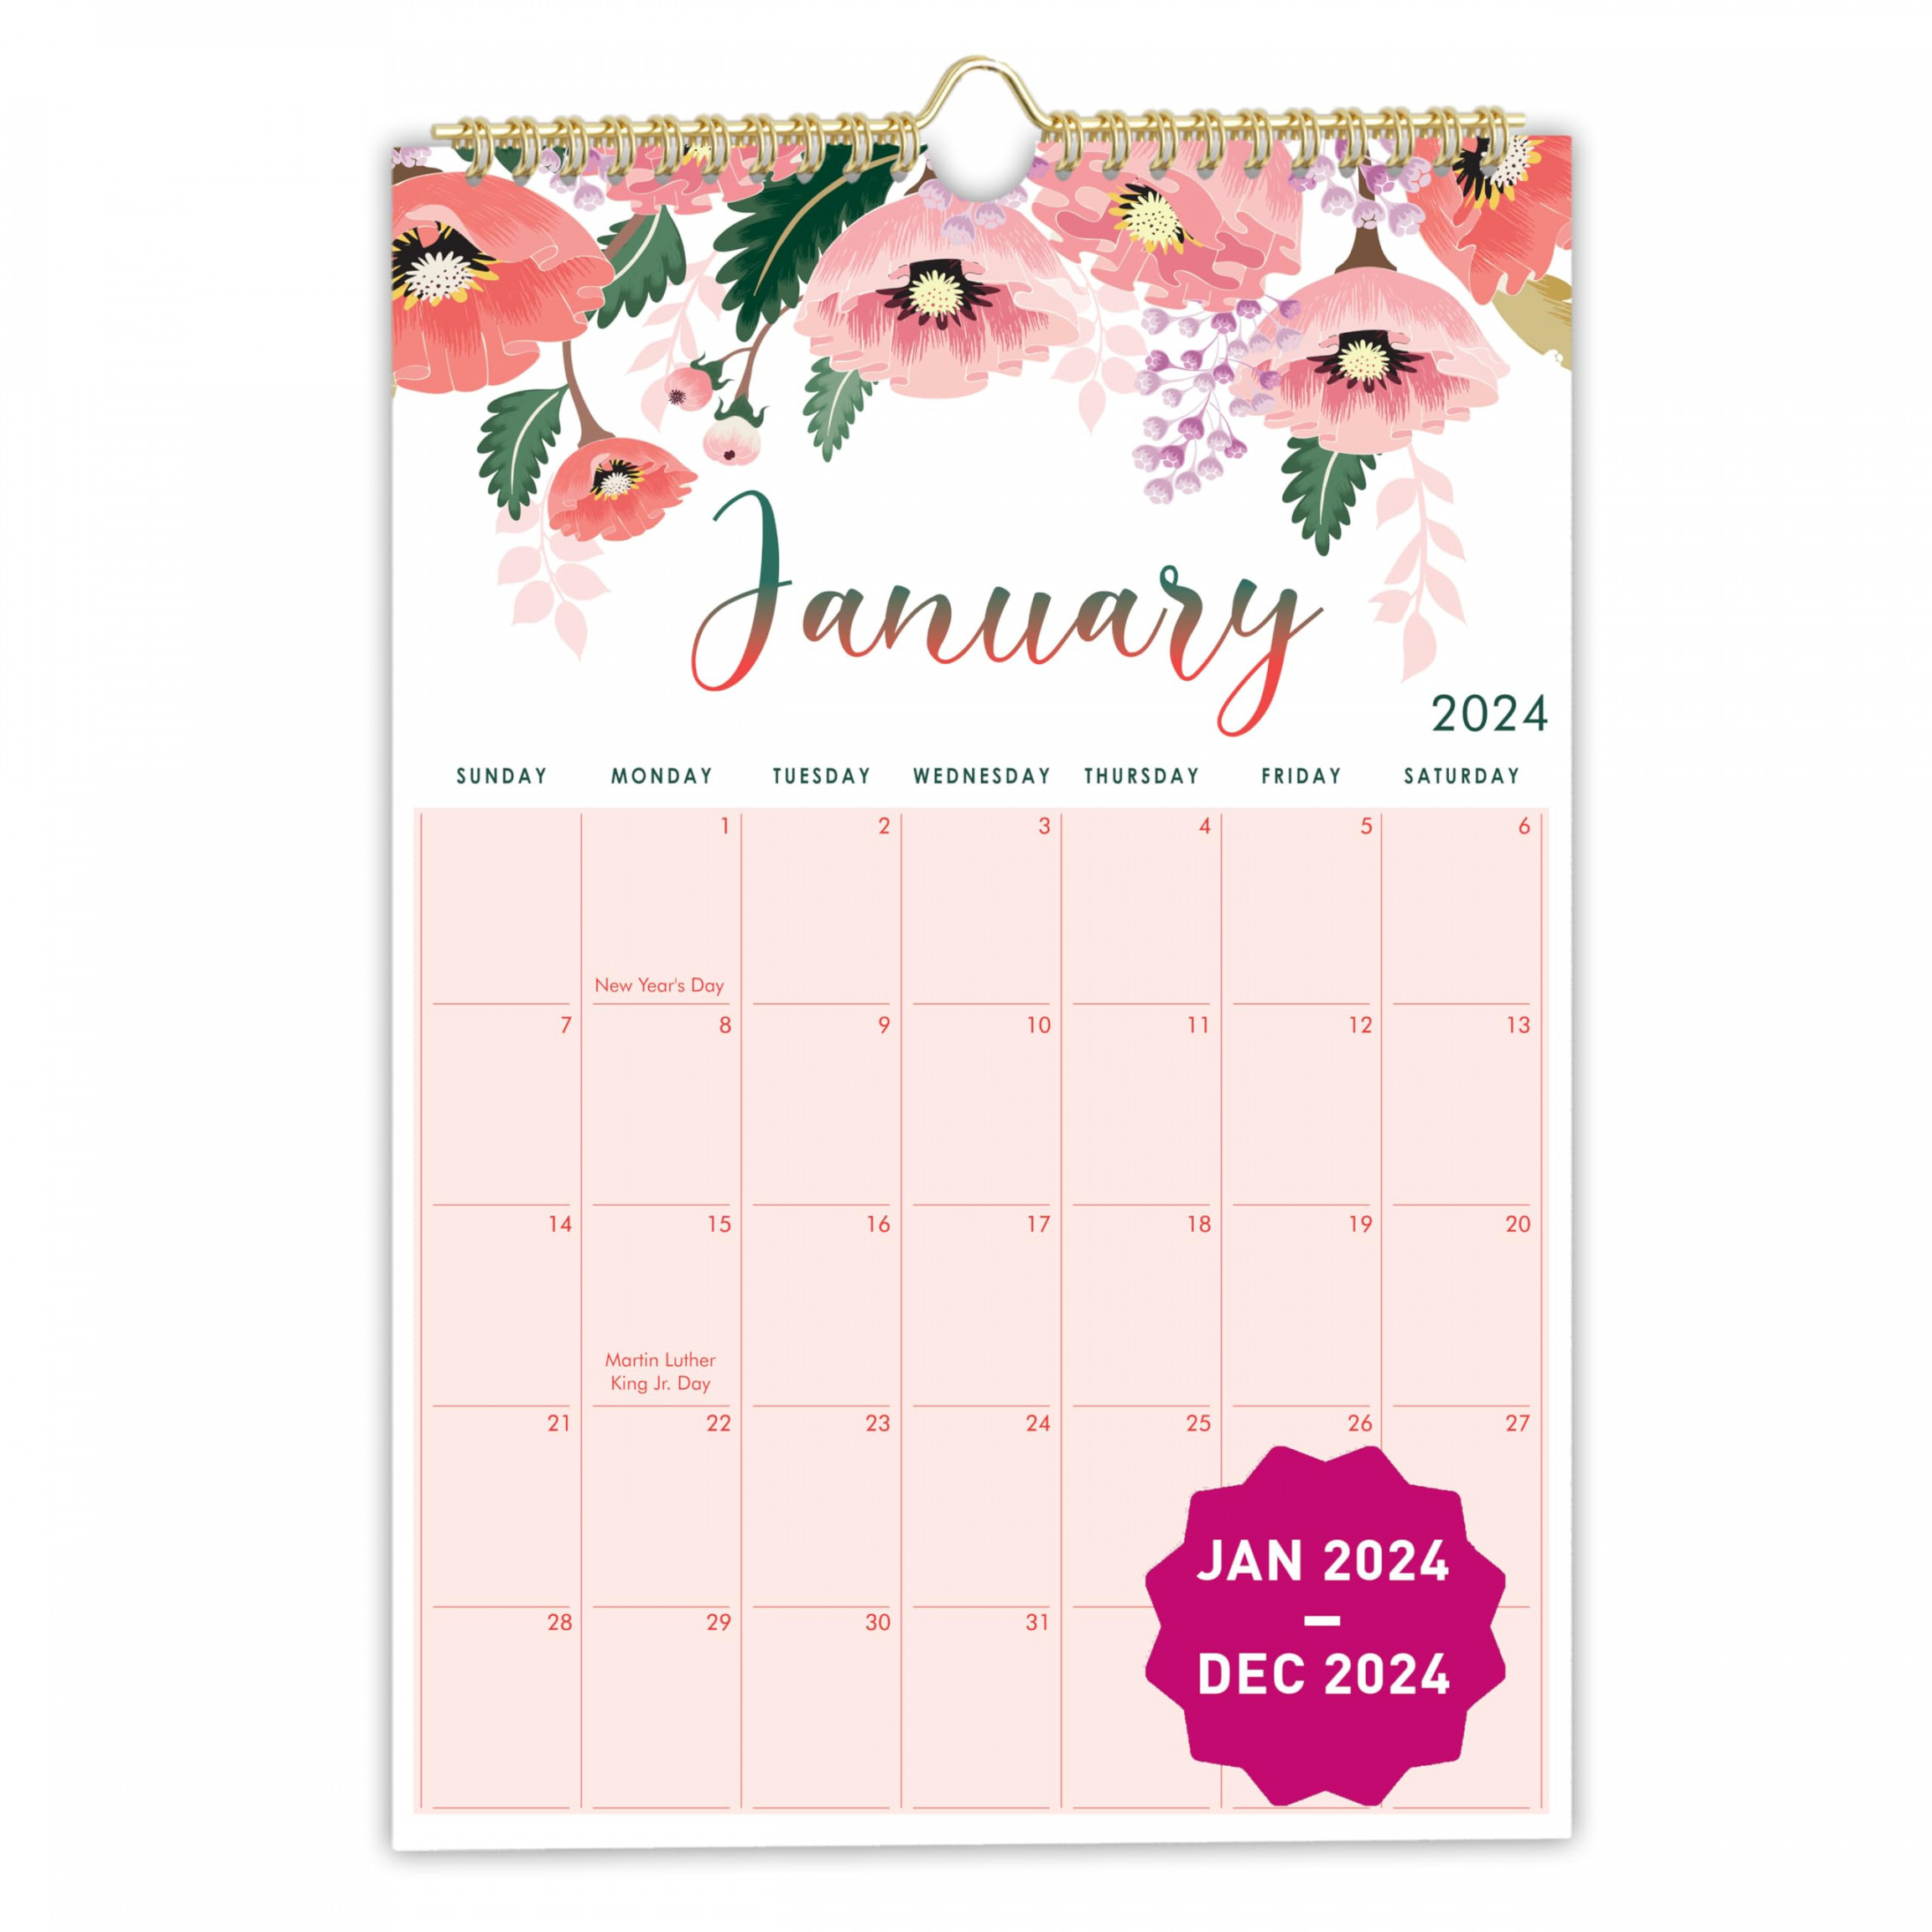 mudrit  Wall Calendar, " X ",  Monthly Calendar from Jan   till Dec , Spiral Bound See more mudrit  Wall Calendar, " X ",